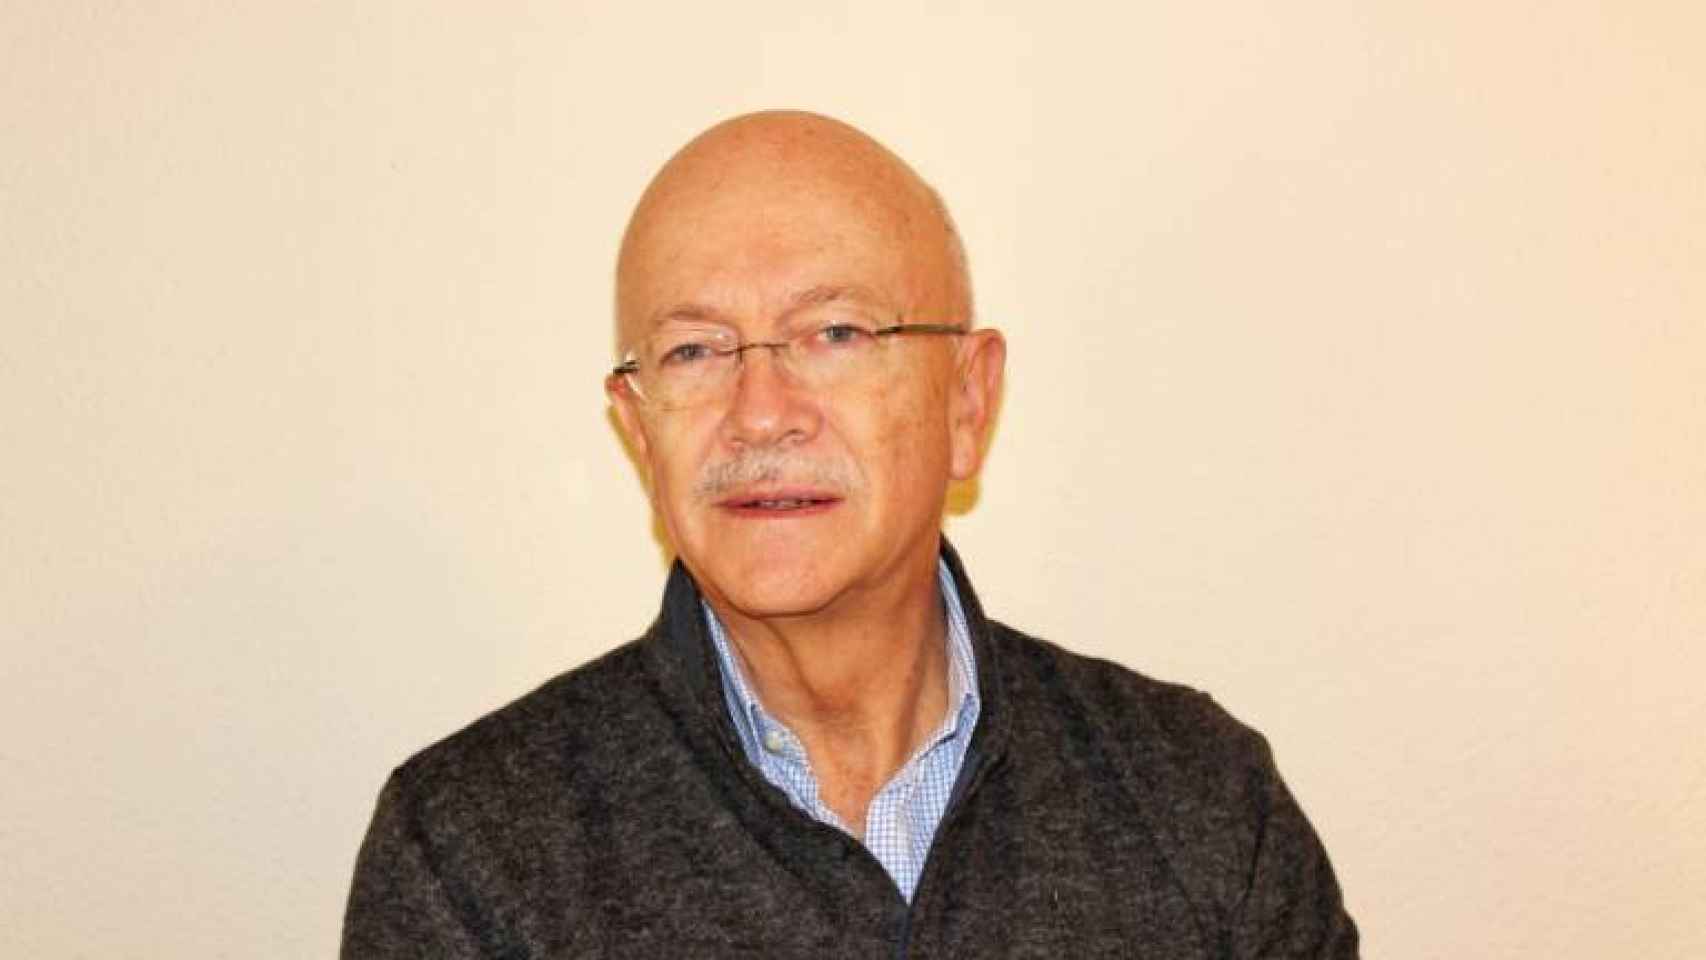 Andrés Ortega Klein es investigador sénior asociado en el Real Instituto Elcano y presidente de la Comunidad de Herederos de José Ortega y Gasset.